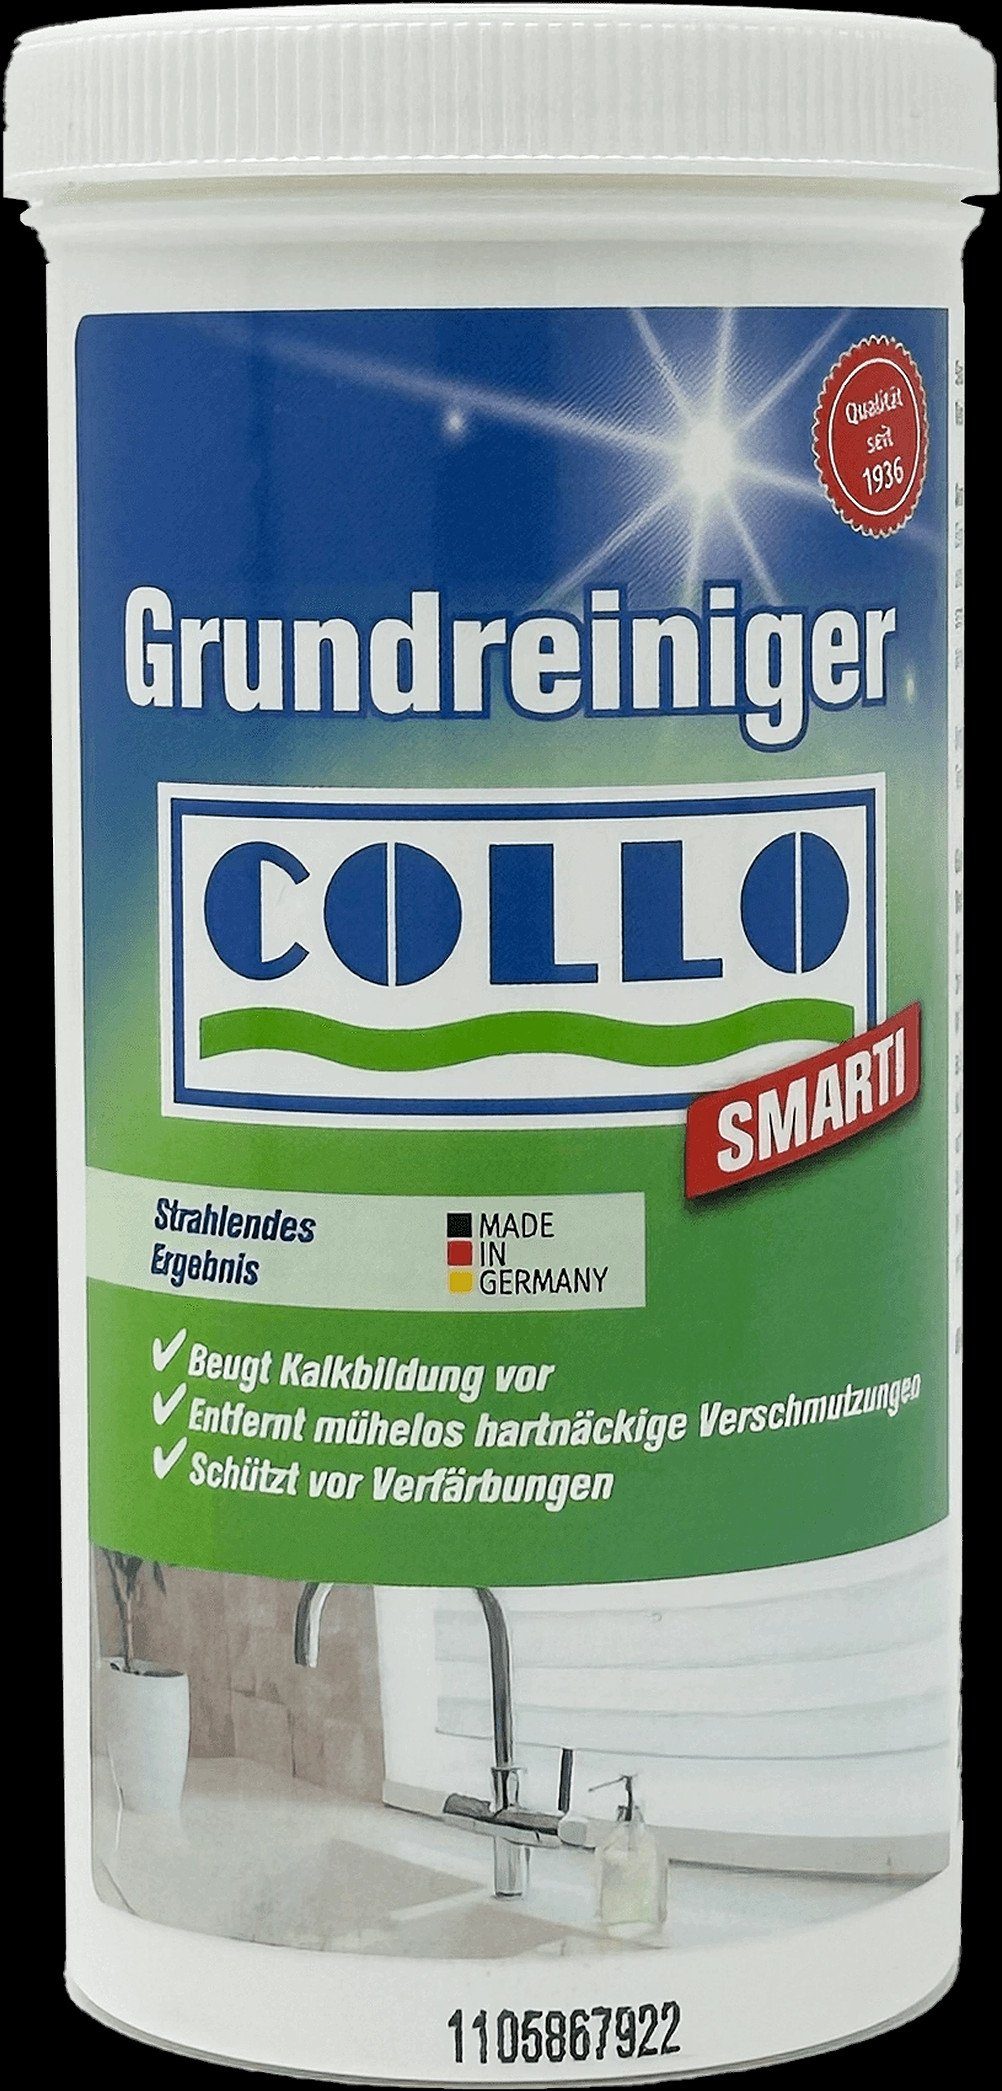 für Smarti COLLO 200g Collo Keramik-Waschbecken, Grundreiniger Küchenreiniger